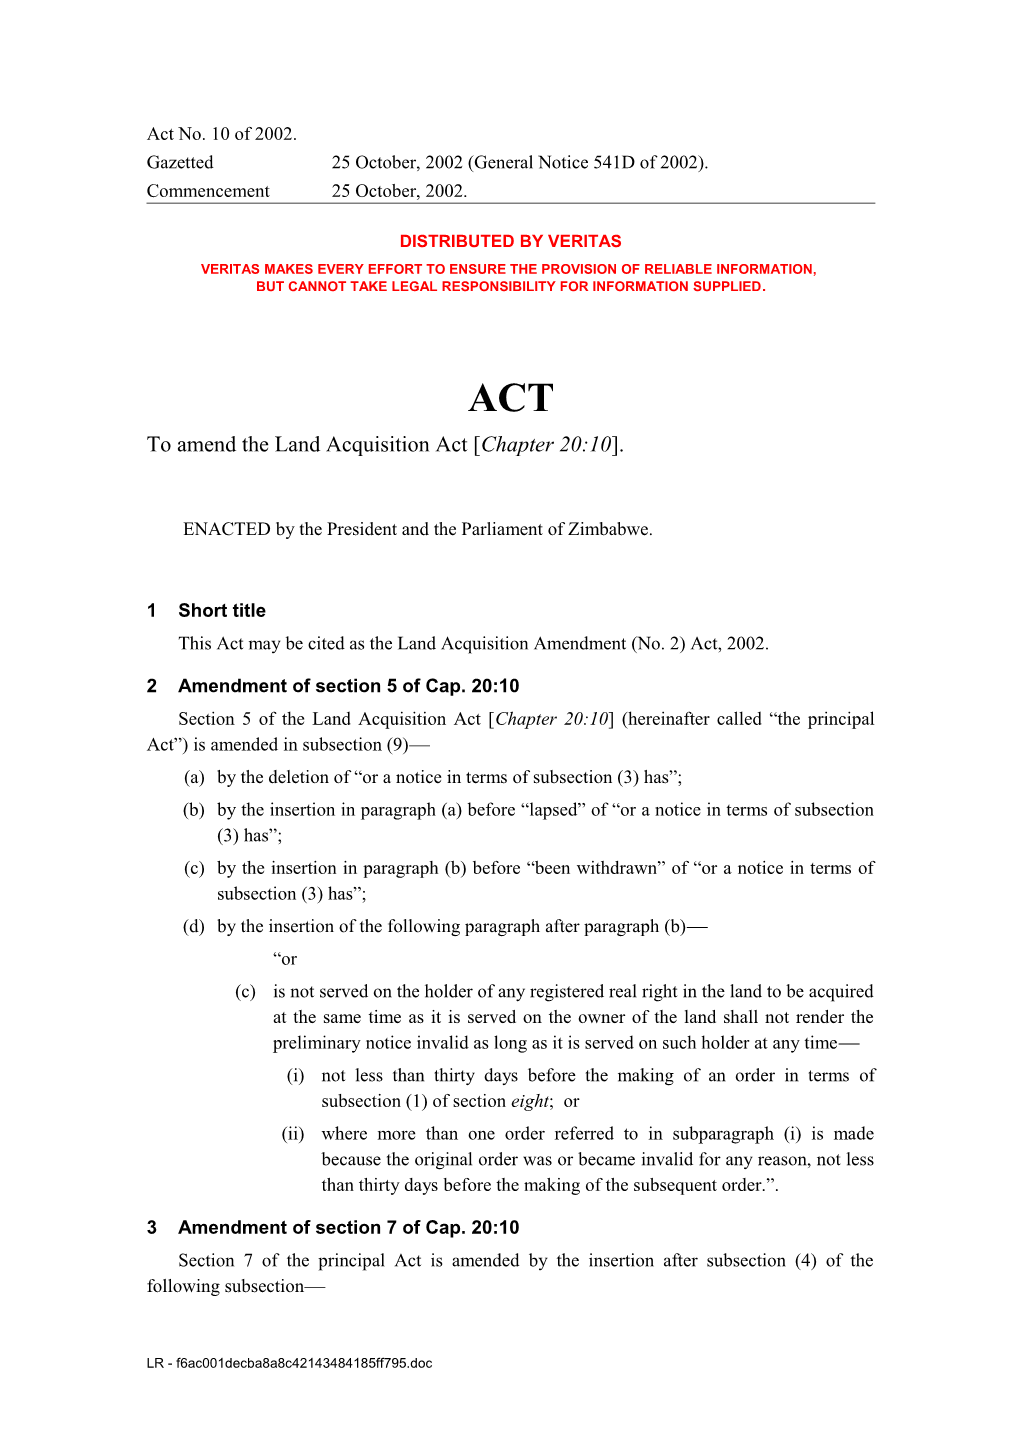 Land Acquisition Amendment (No. 2) Act 10/2002